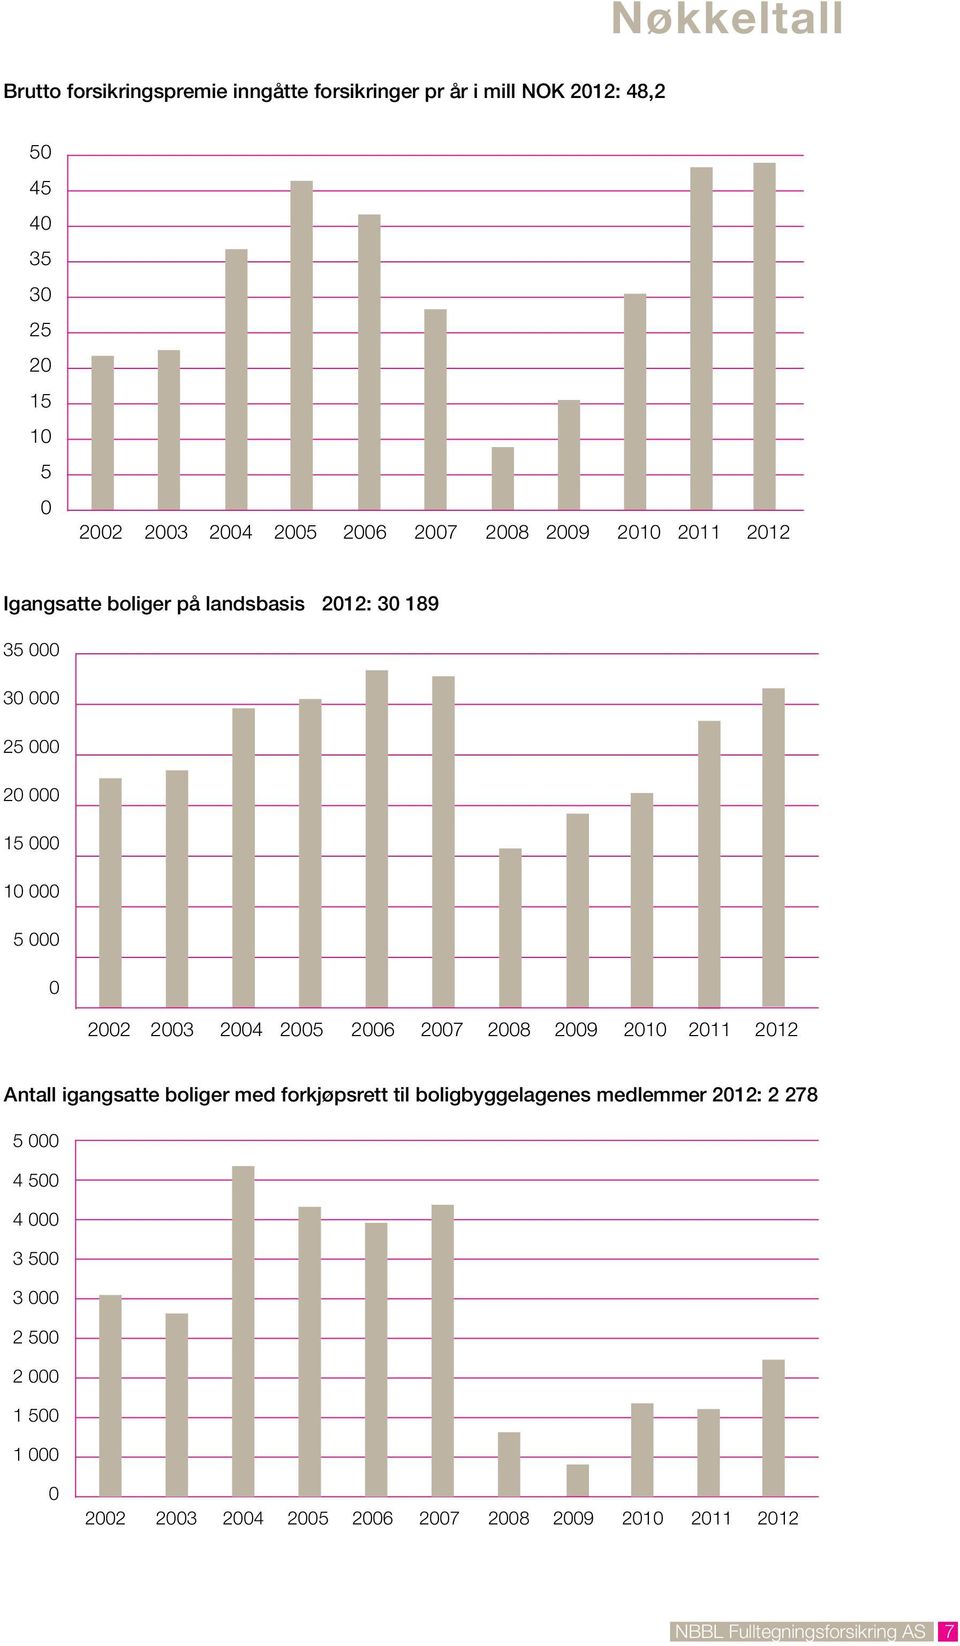 2003 2004 2005 2006 2007 2008 2009 2010 2011 2012 Antall igangsatte boliger med forkjøpsrett til boligbyggelagenes medlemmer 2012: 2 278 5